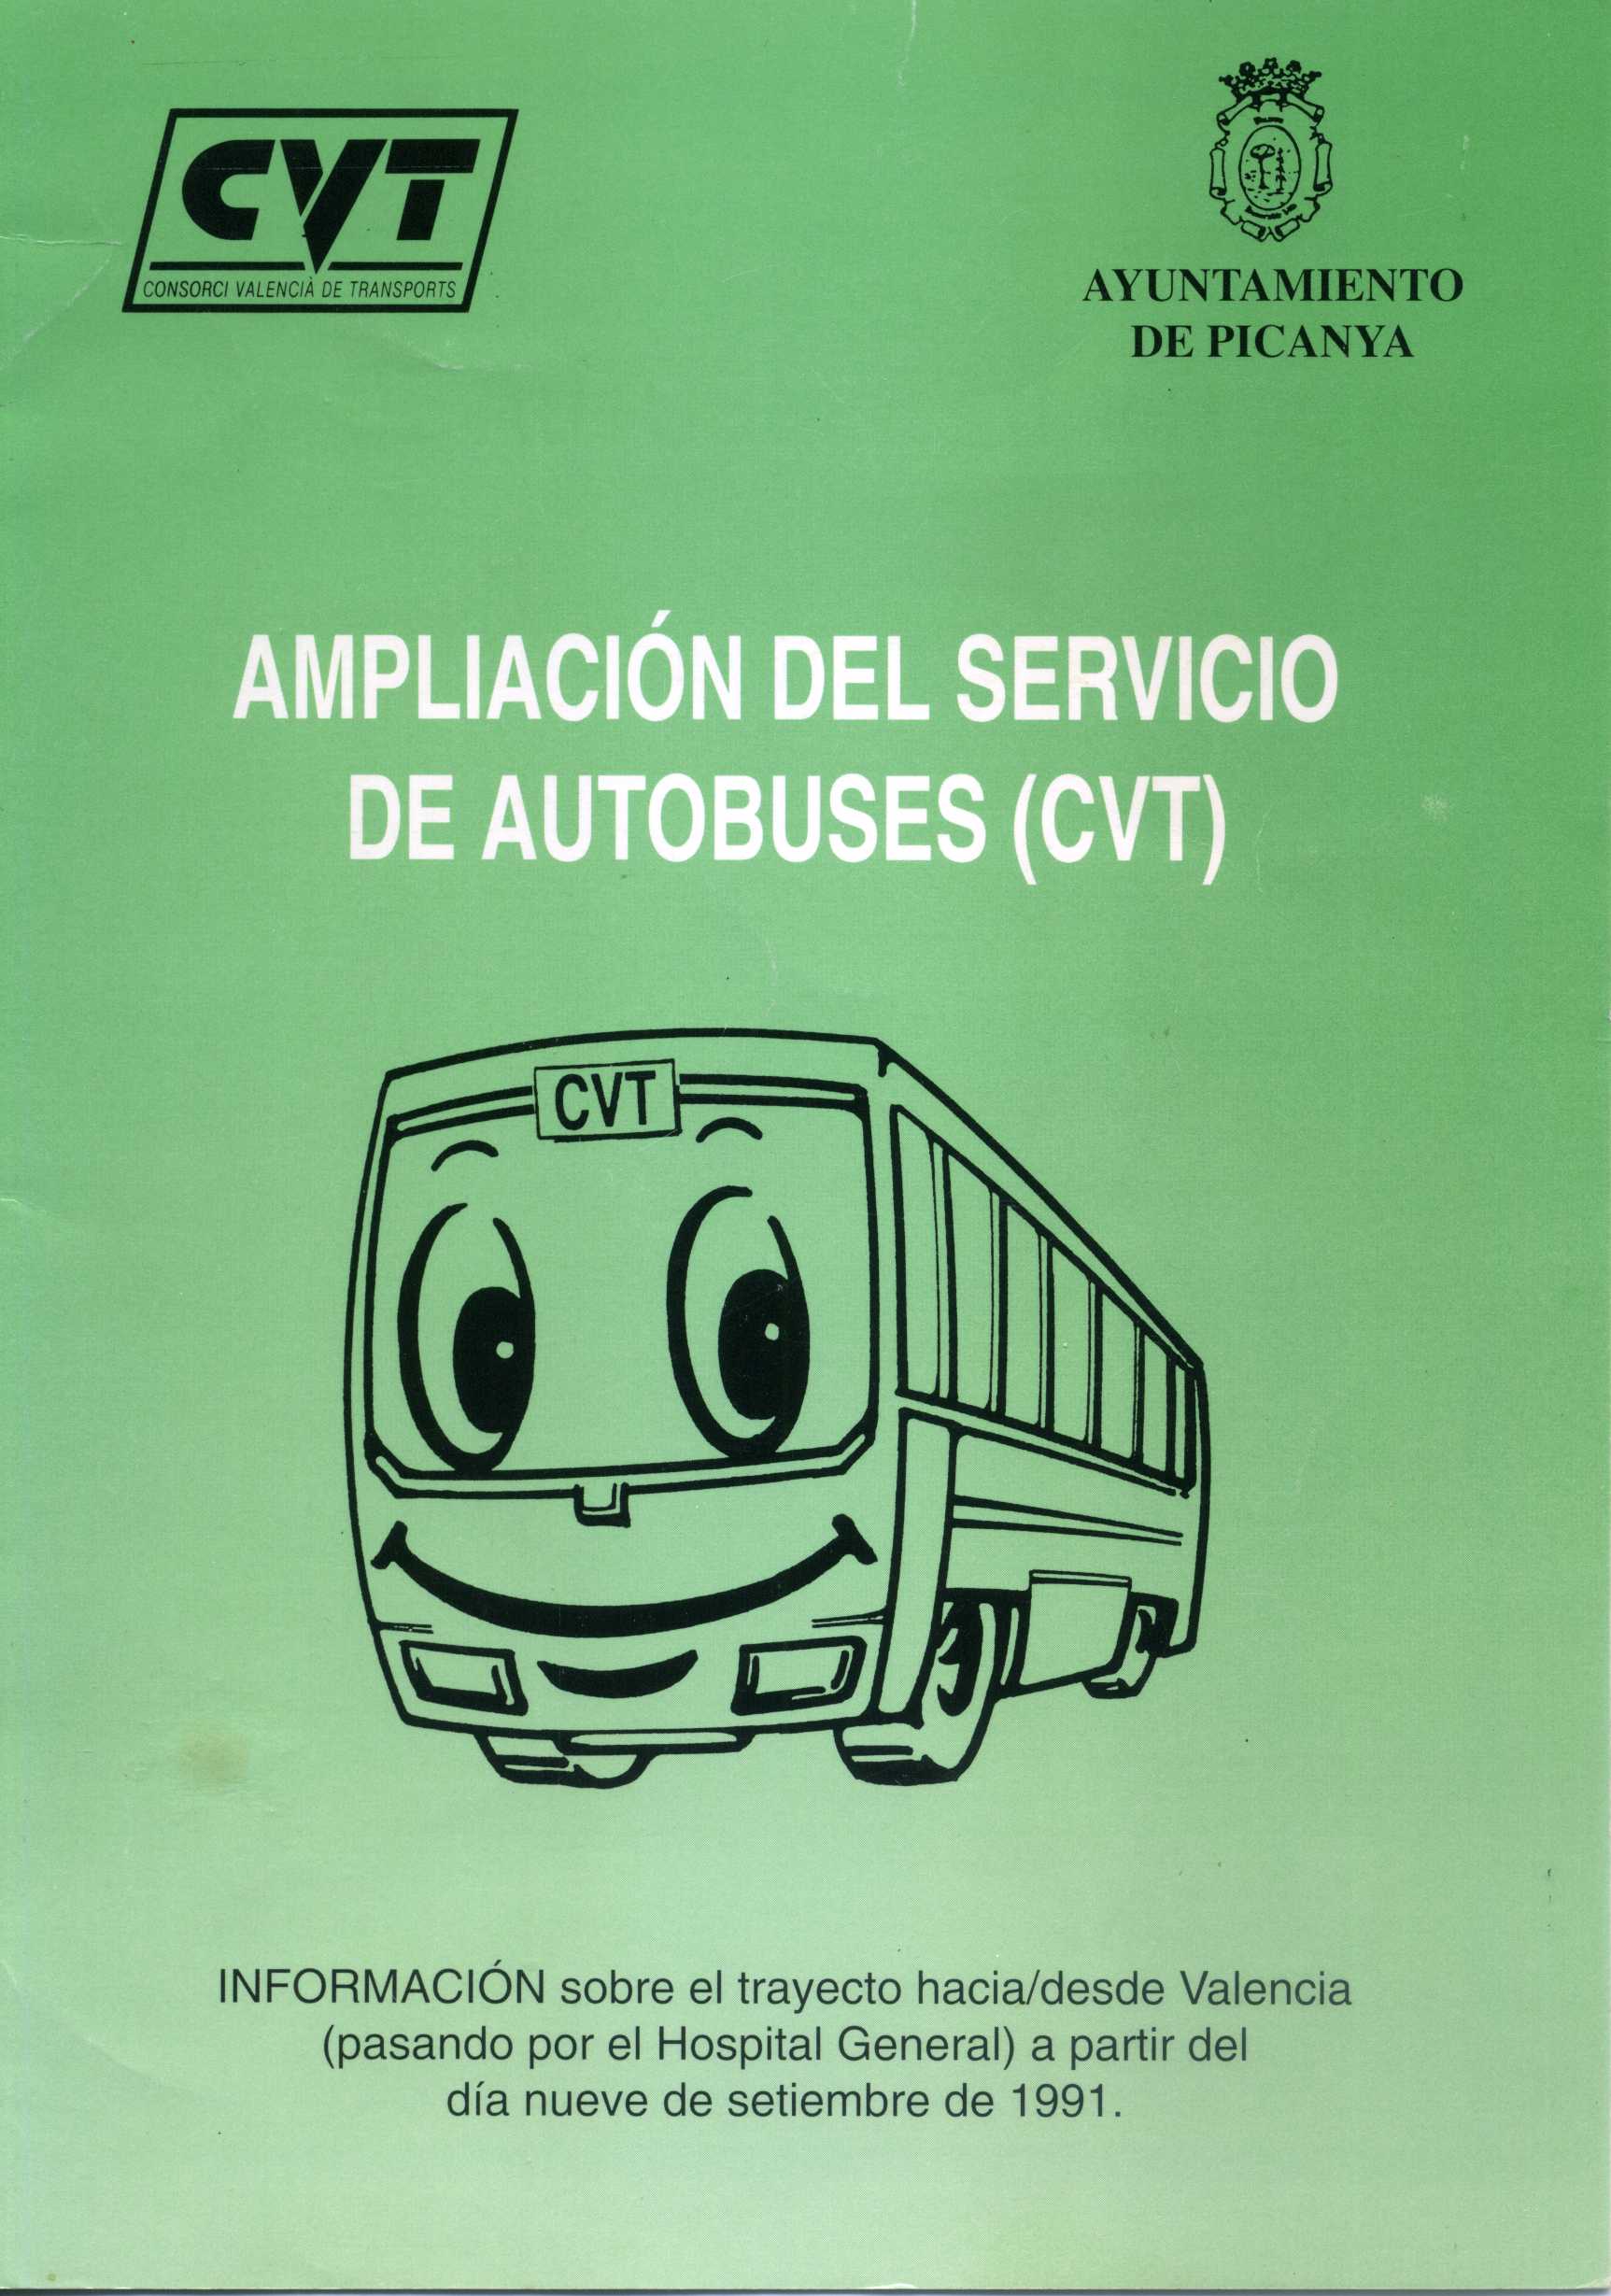 Ampliación del servicio de autobuses Picanya-Valencia